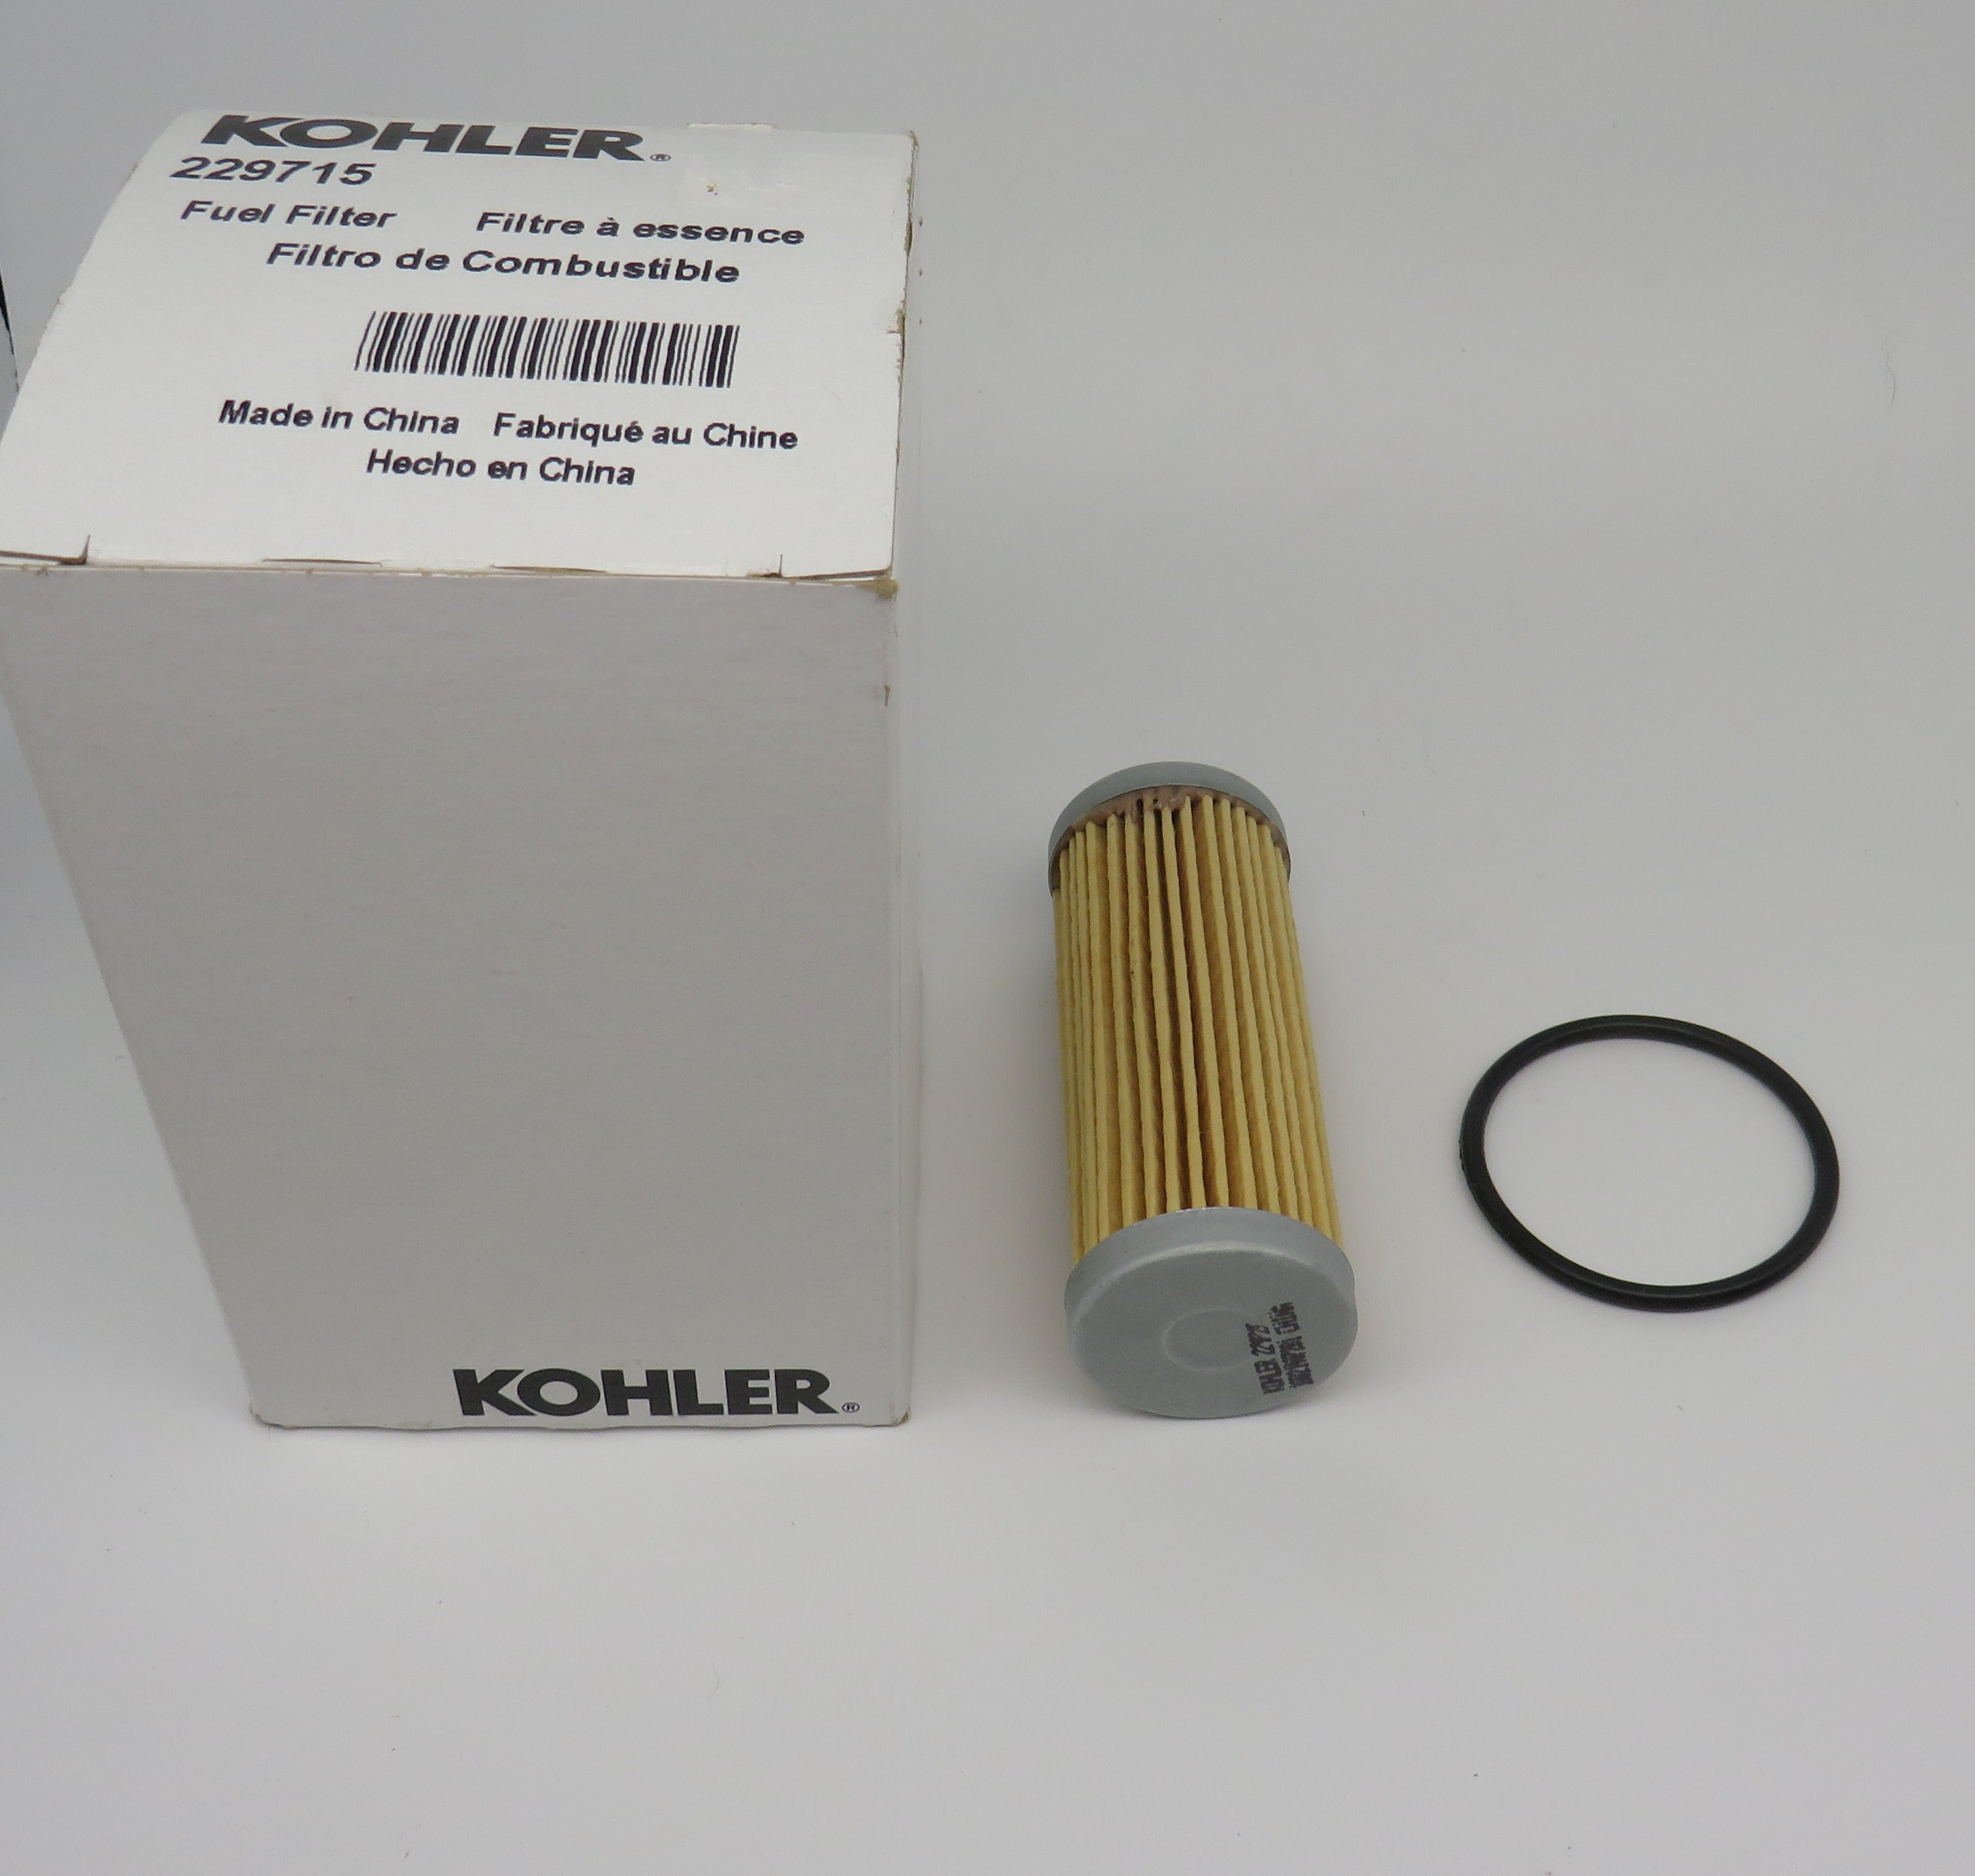 229715 Kohler Fuel Filter Element